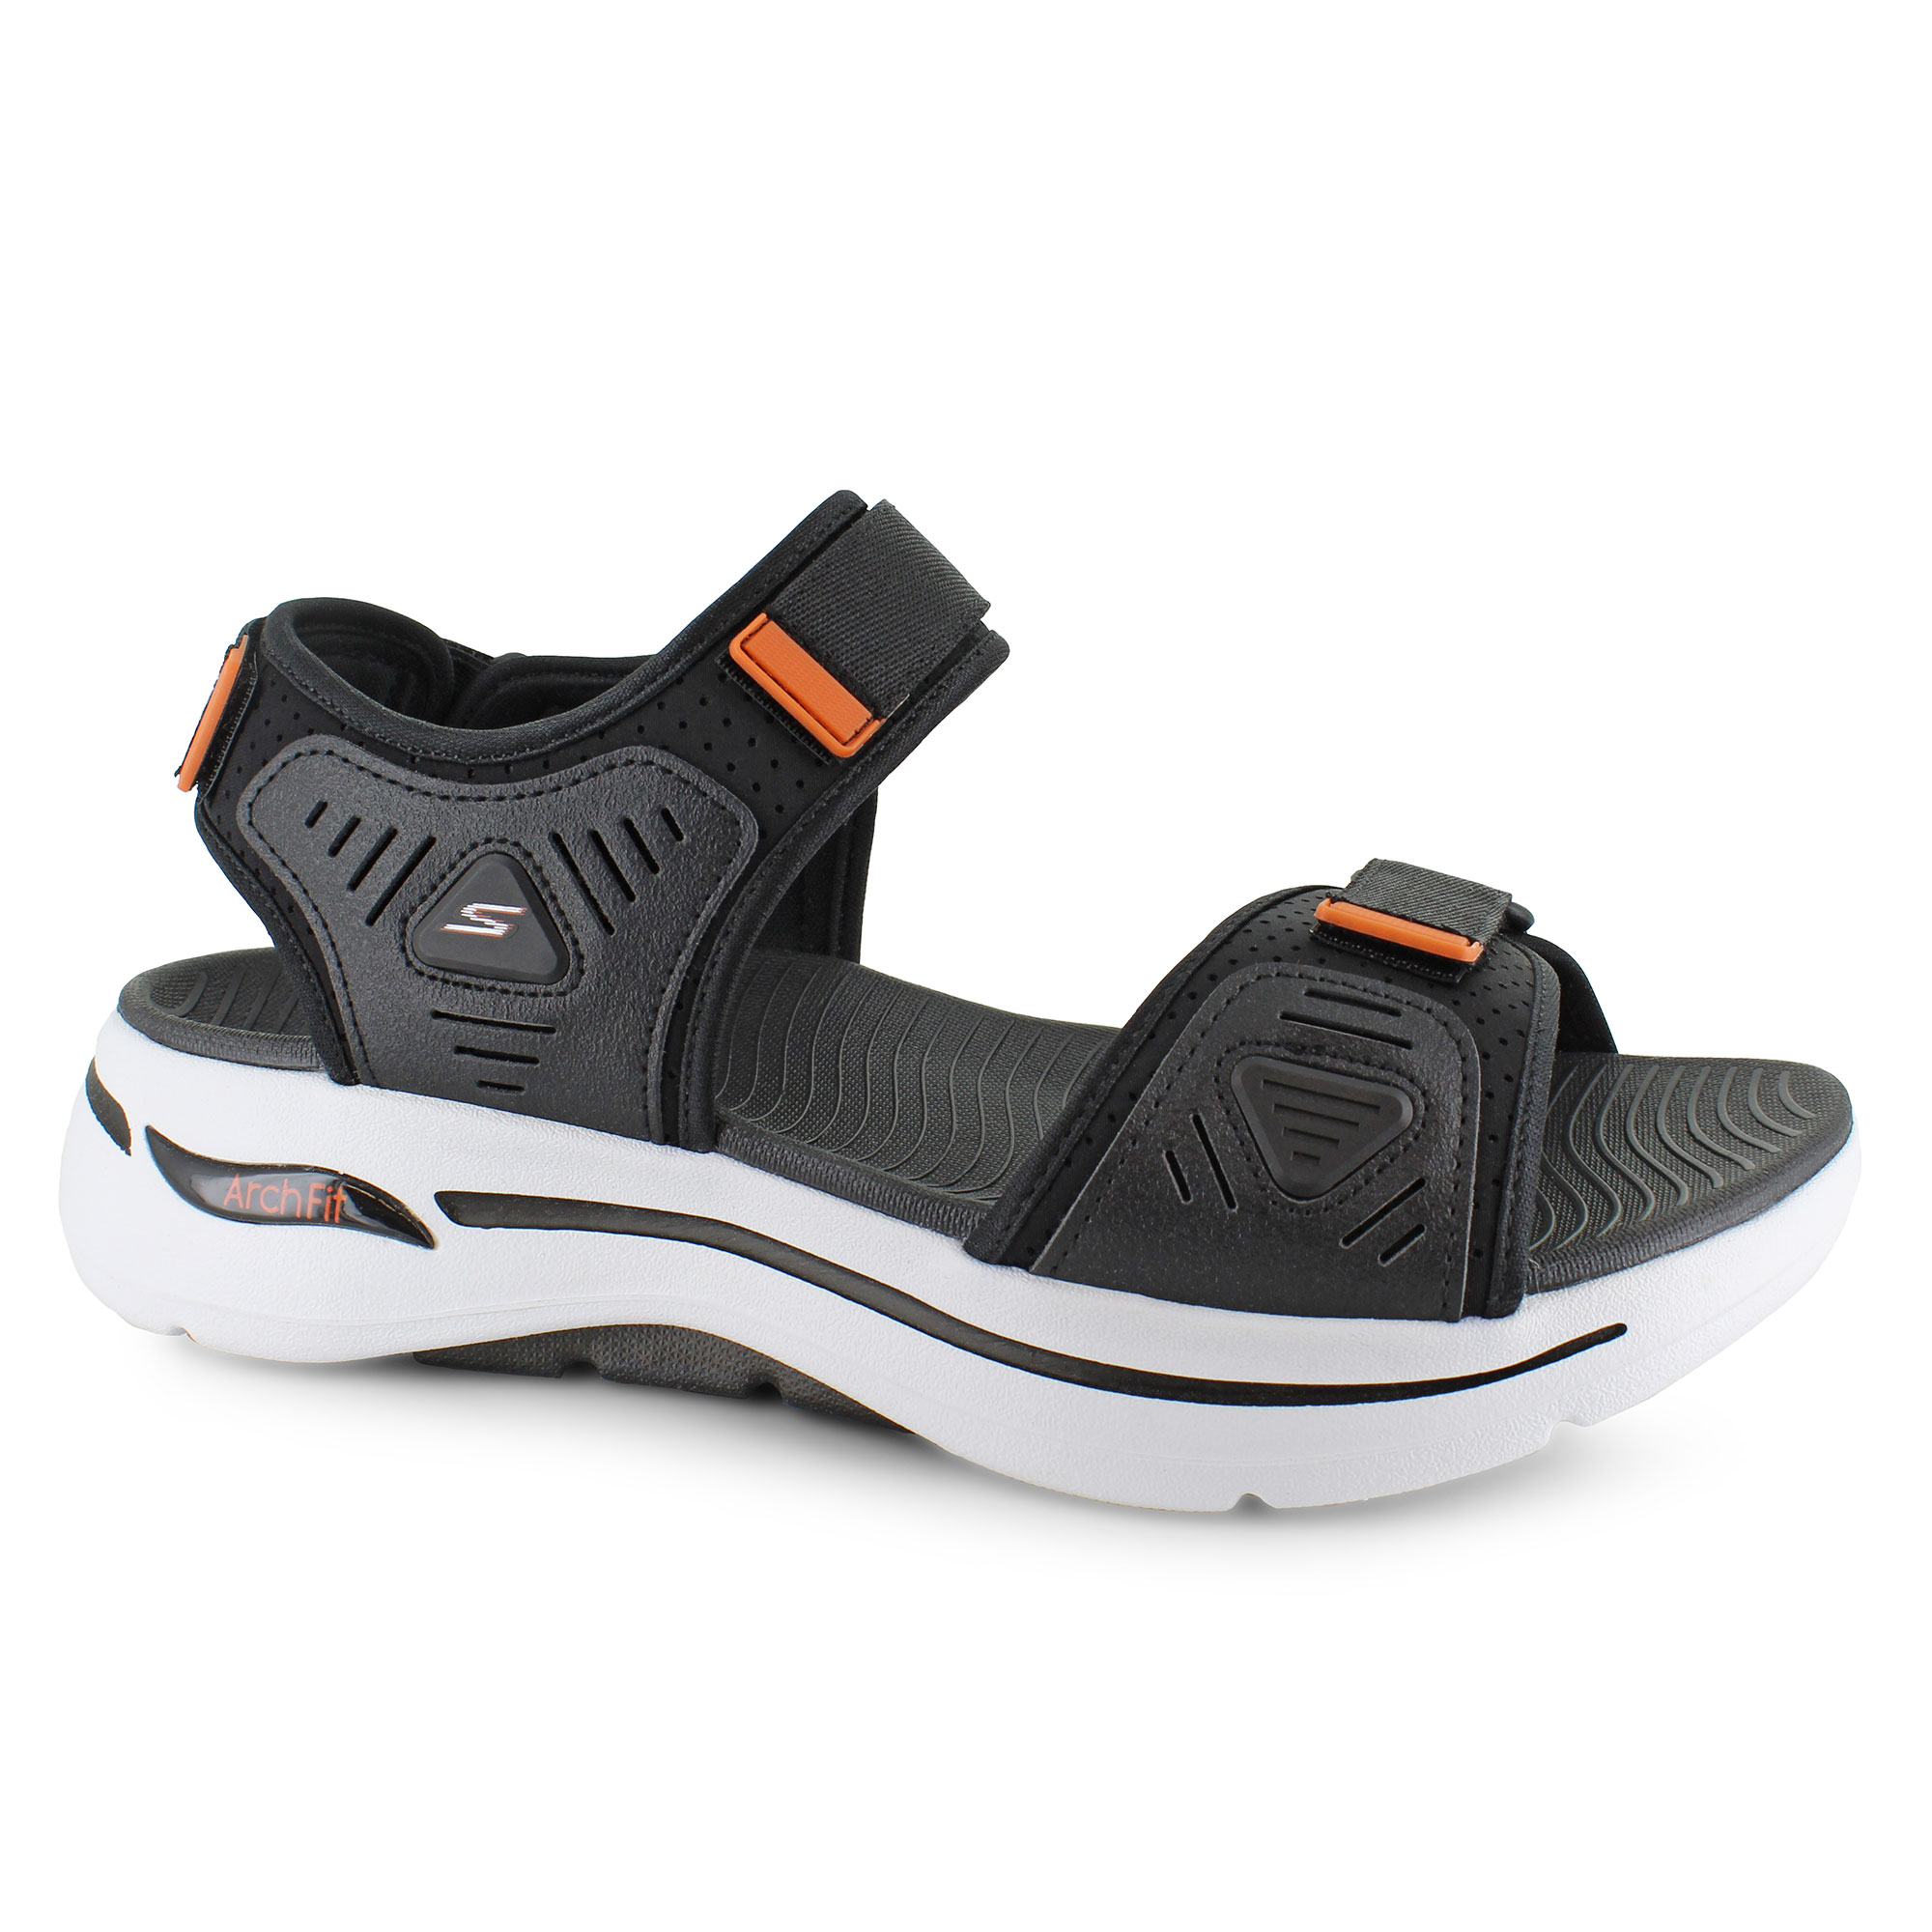 Buy Navy Sandals for Men by Skechers Online | Ajio.com